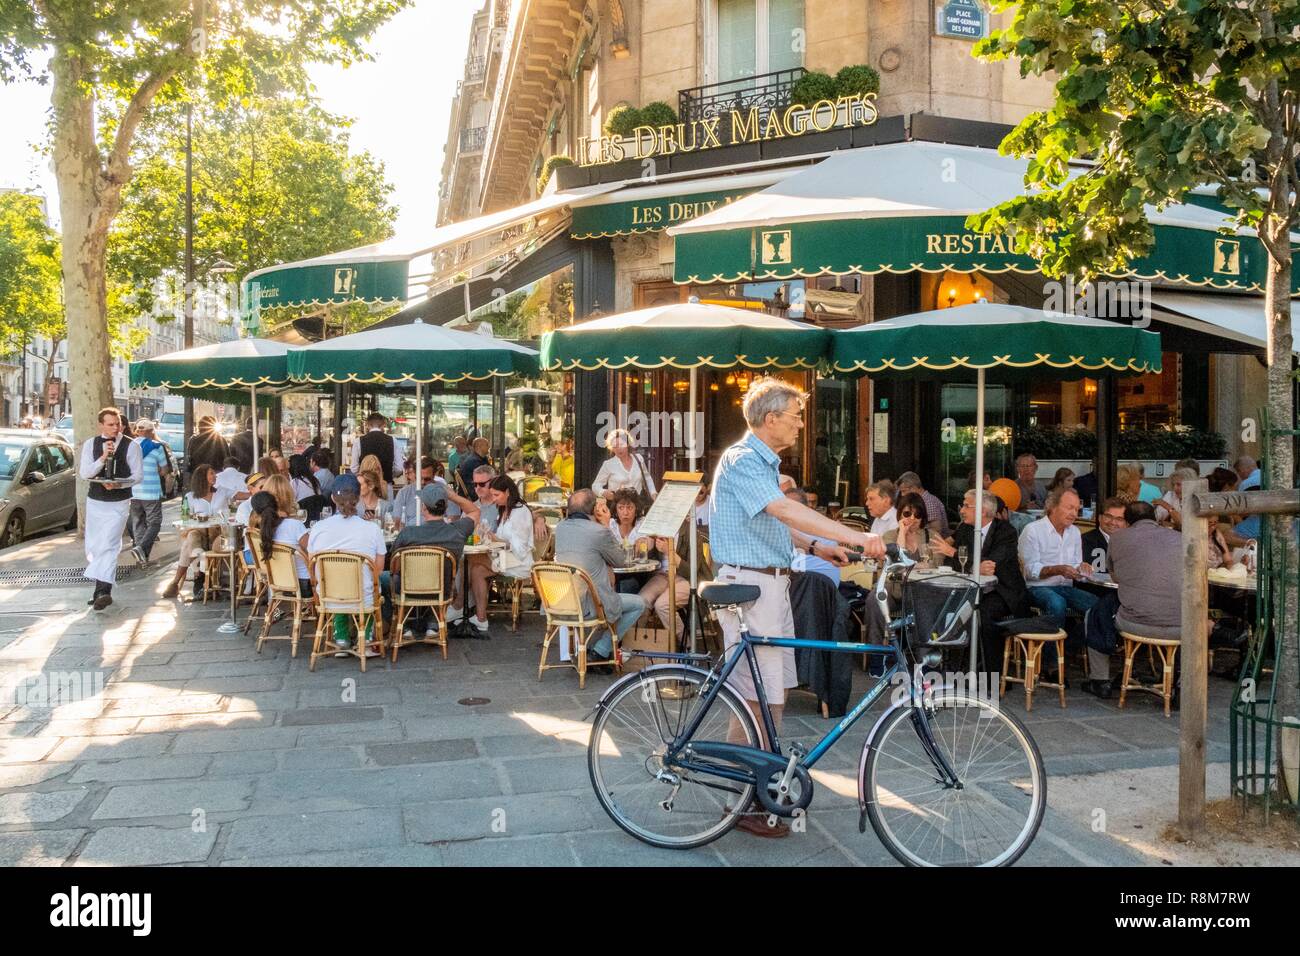 France, Paris, Saint Germain des Pres district, the Deux Magots restaurant Stock Photo